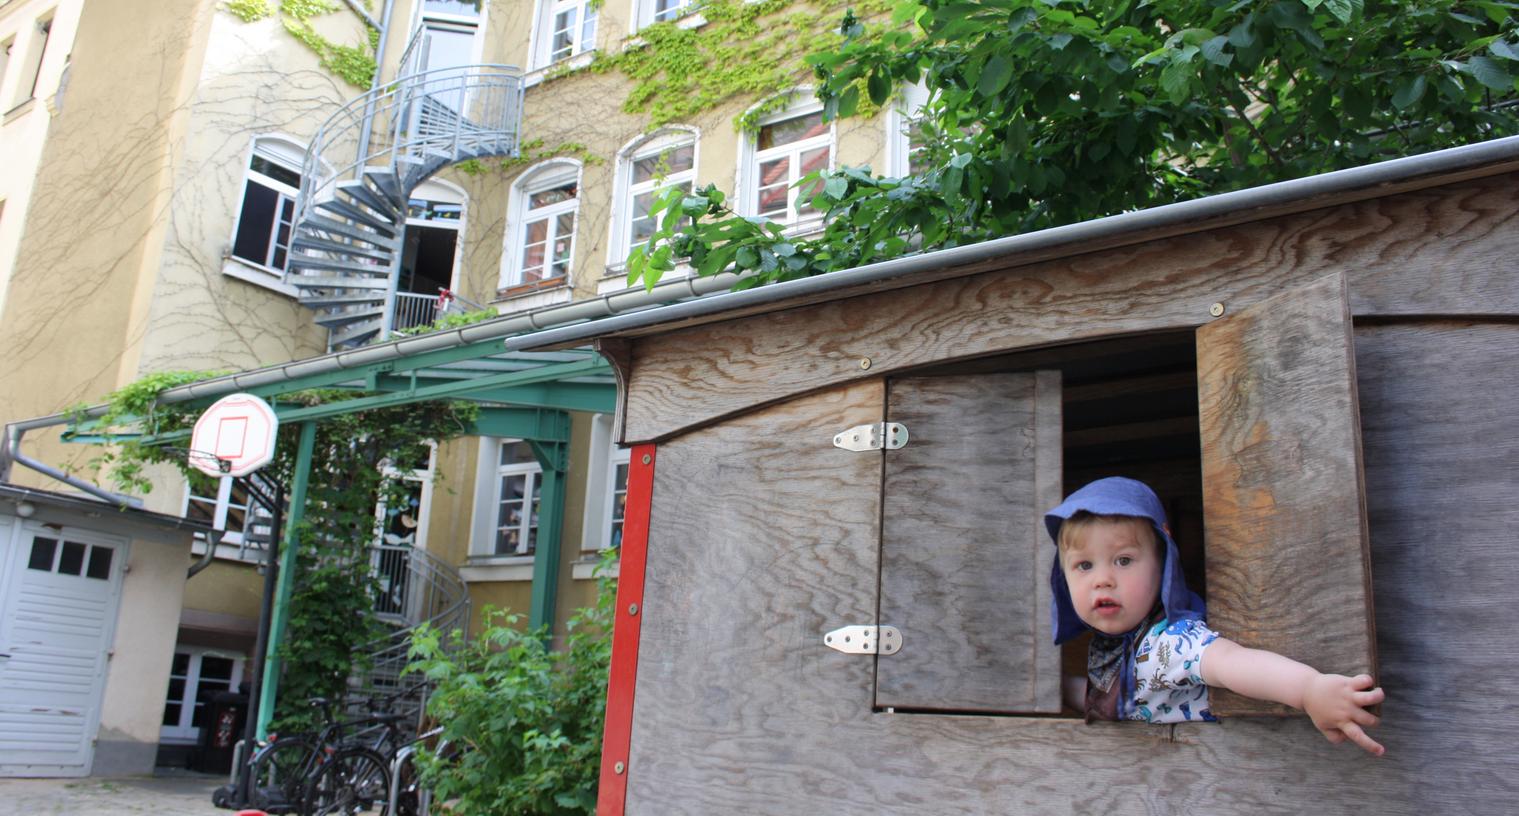 Im August 2018 endet der Mietvertrag für das Kinderhaus KuK im Nürnberger Stadtteil St. Johannis. Nun sucht man händeringend nach einer neuen Bleibe.